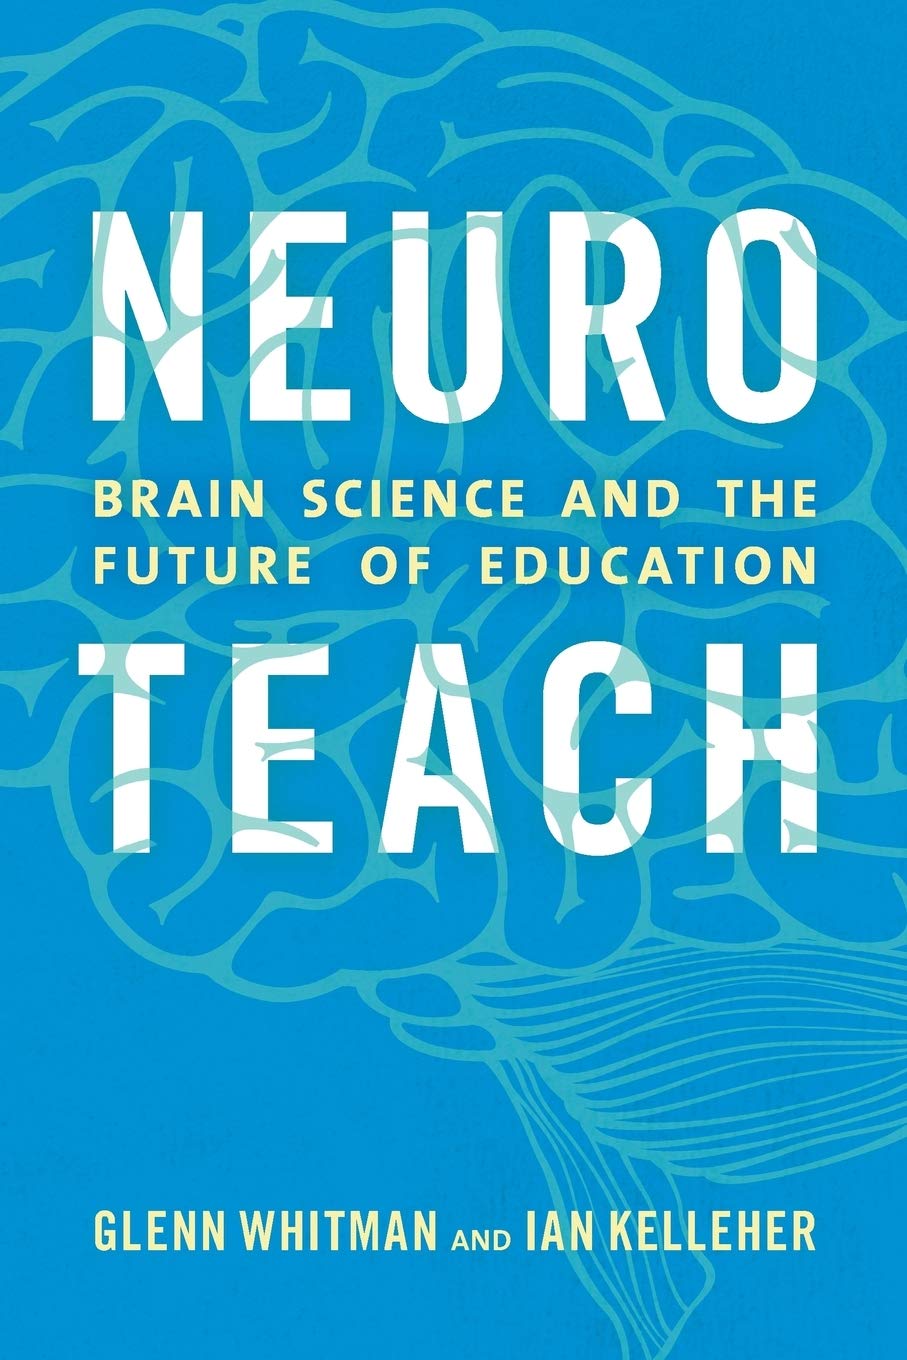 Book Review: Neuro-Teach